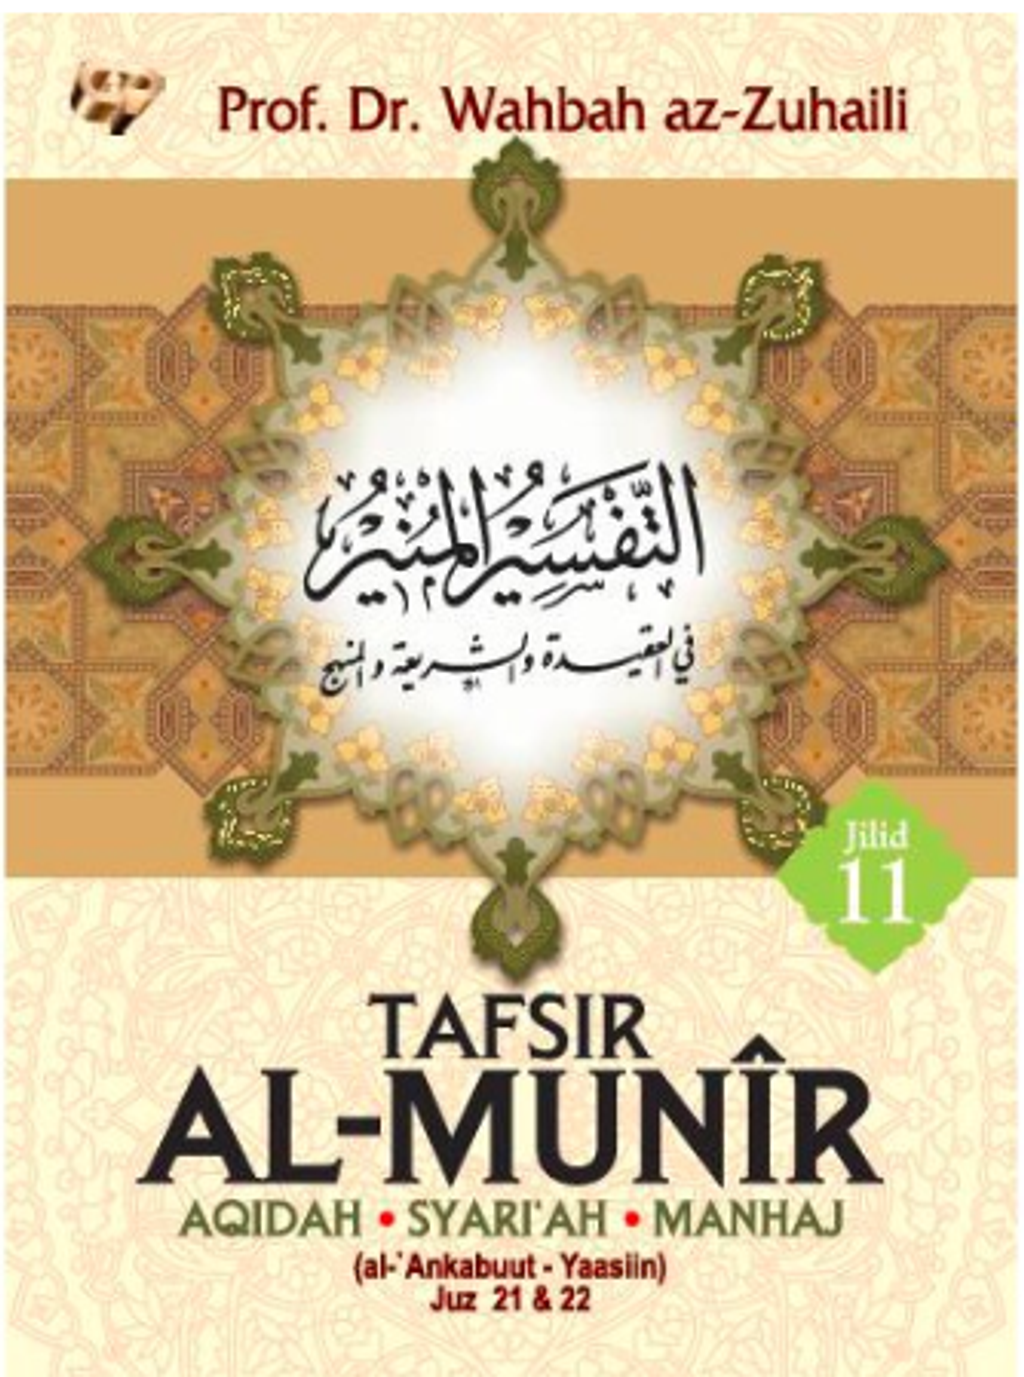 TAFSIR AL-MUNIR JILID 11